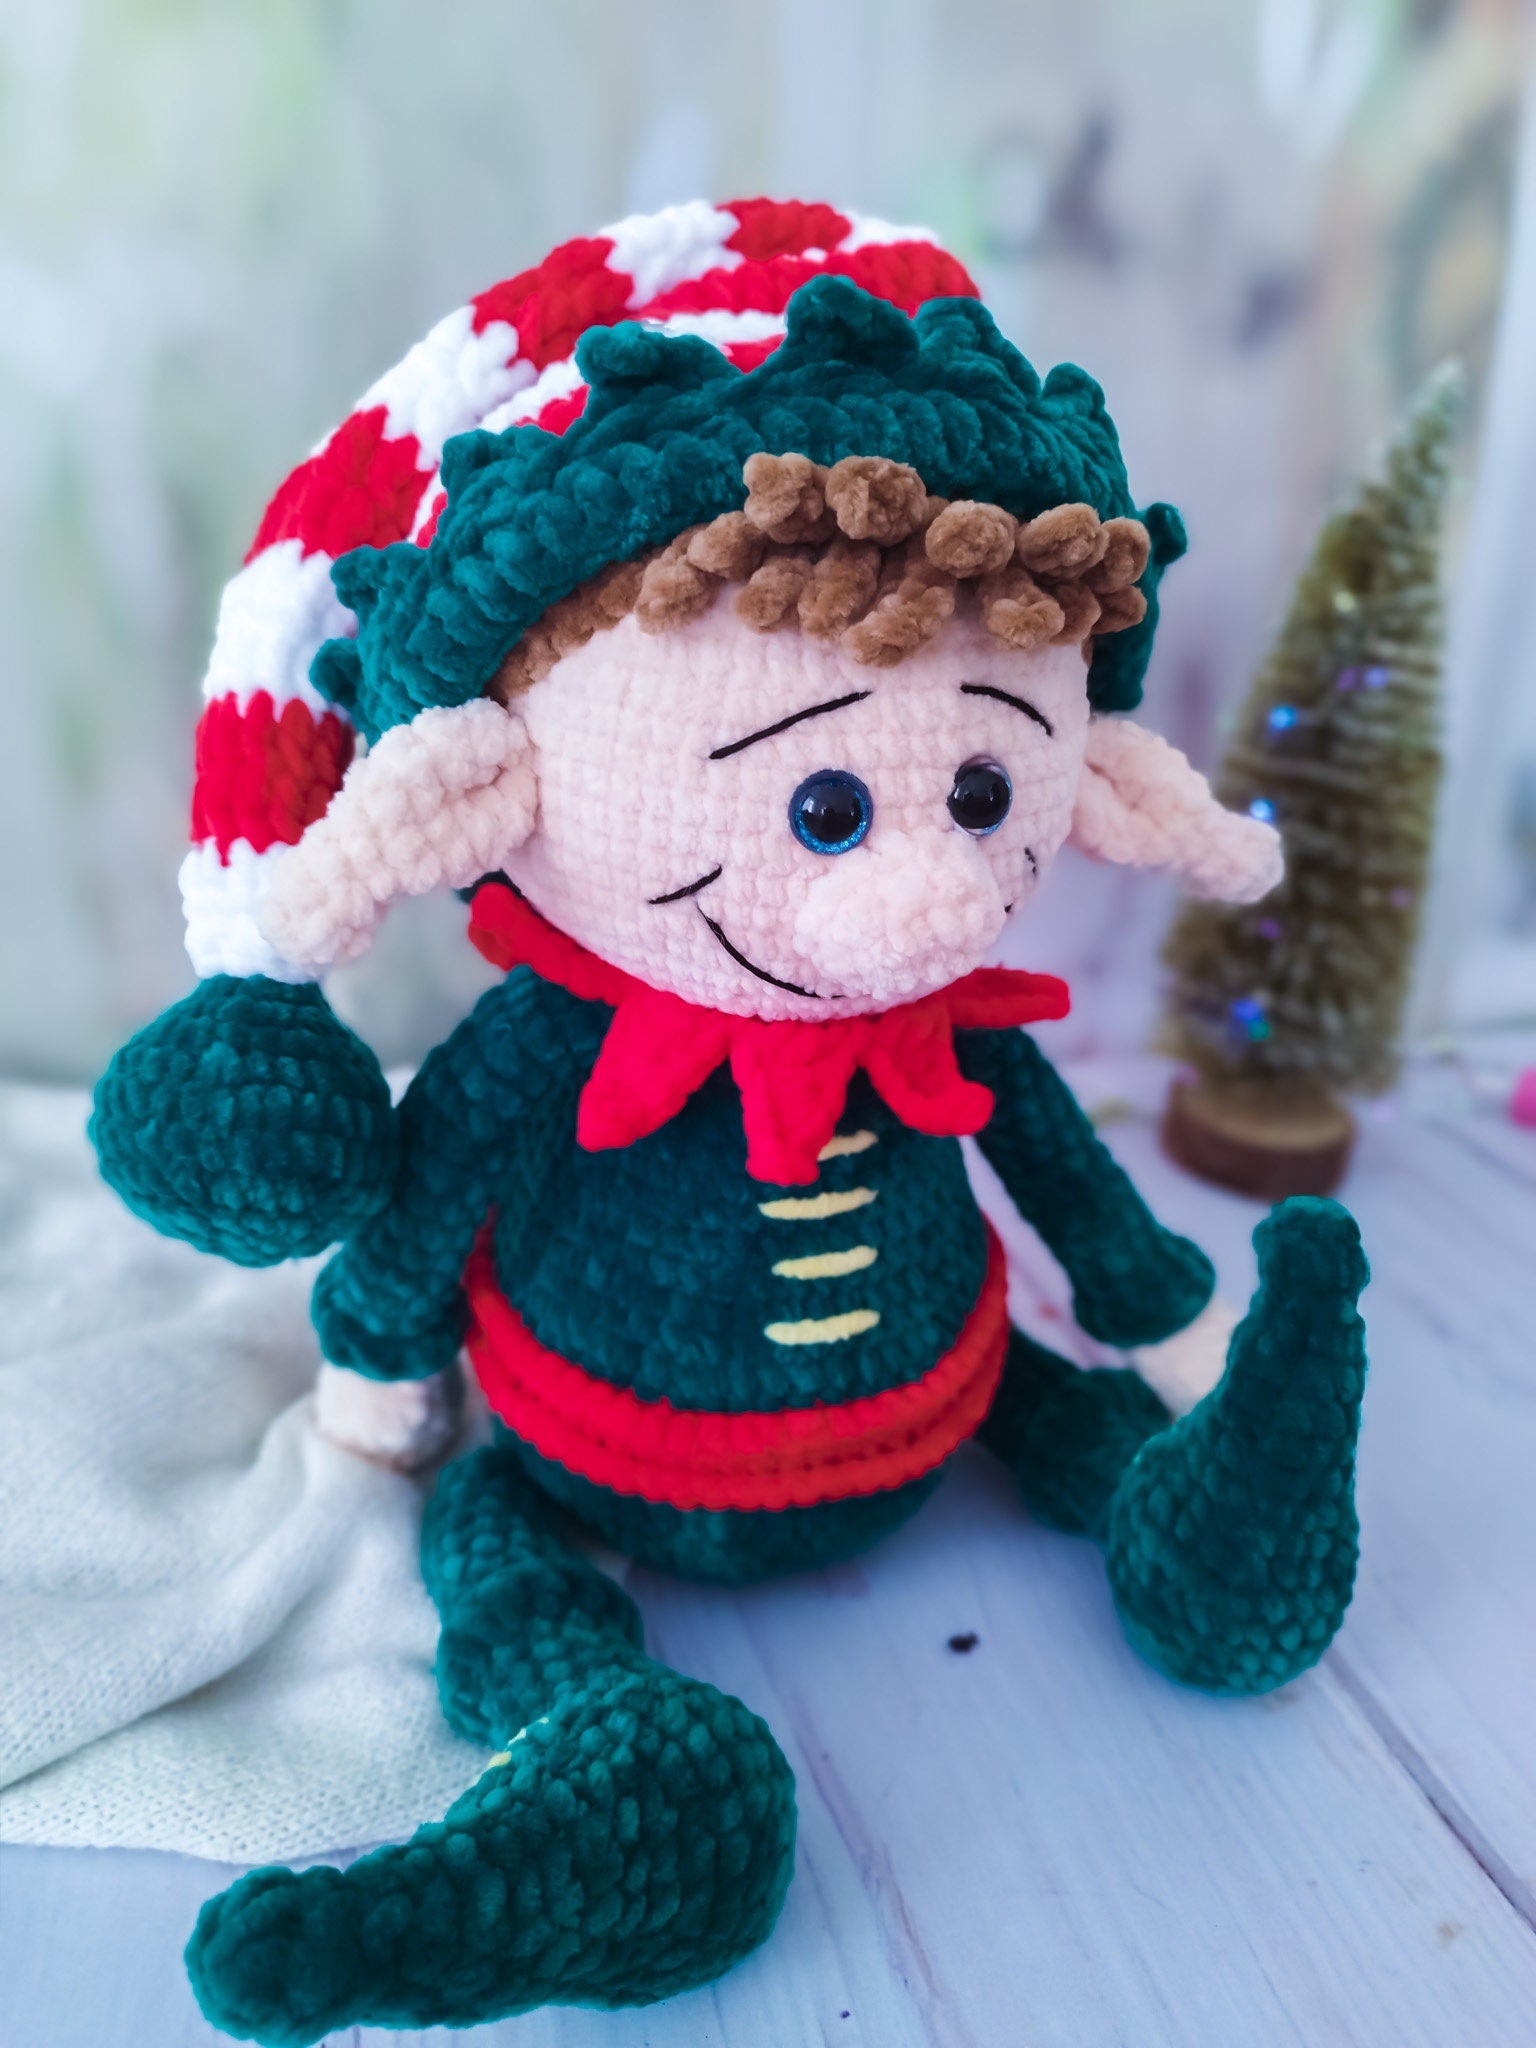 Elf Crochet, Stuffed Elf, Christmas Elf Dolls, Amigurumi Elf, Elf Decor, Elf Boy, Crochet Boy Doll, Christmas Doll, Grandson Gift Elf Plush